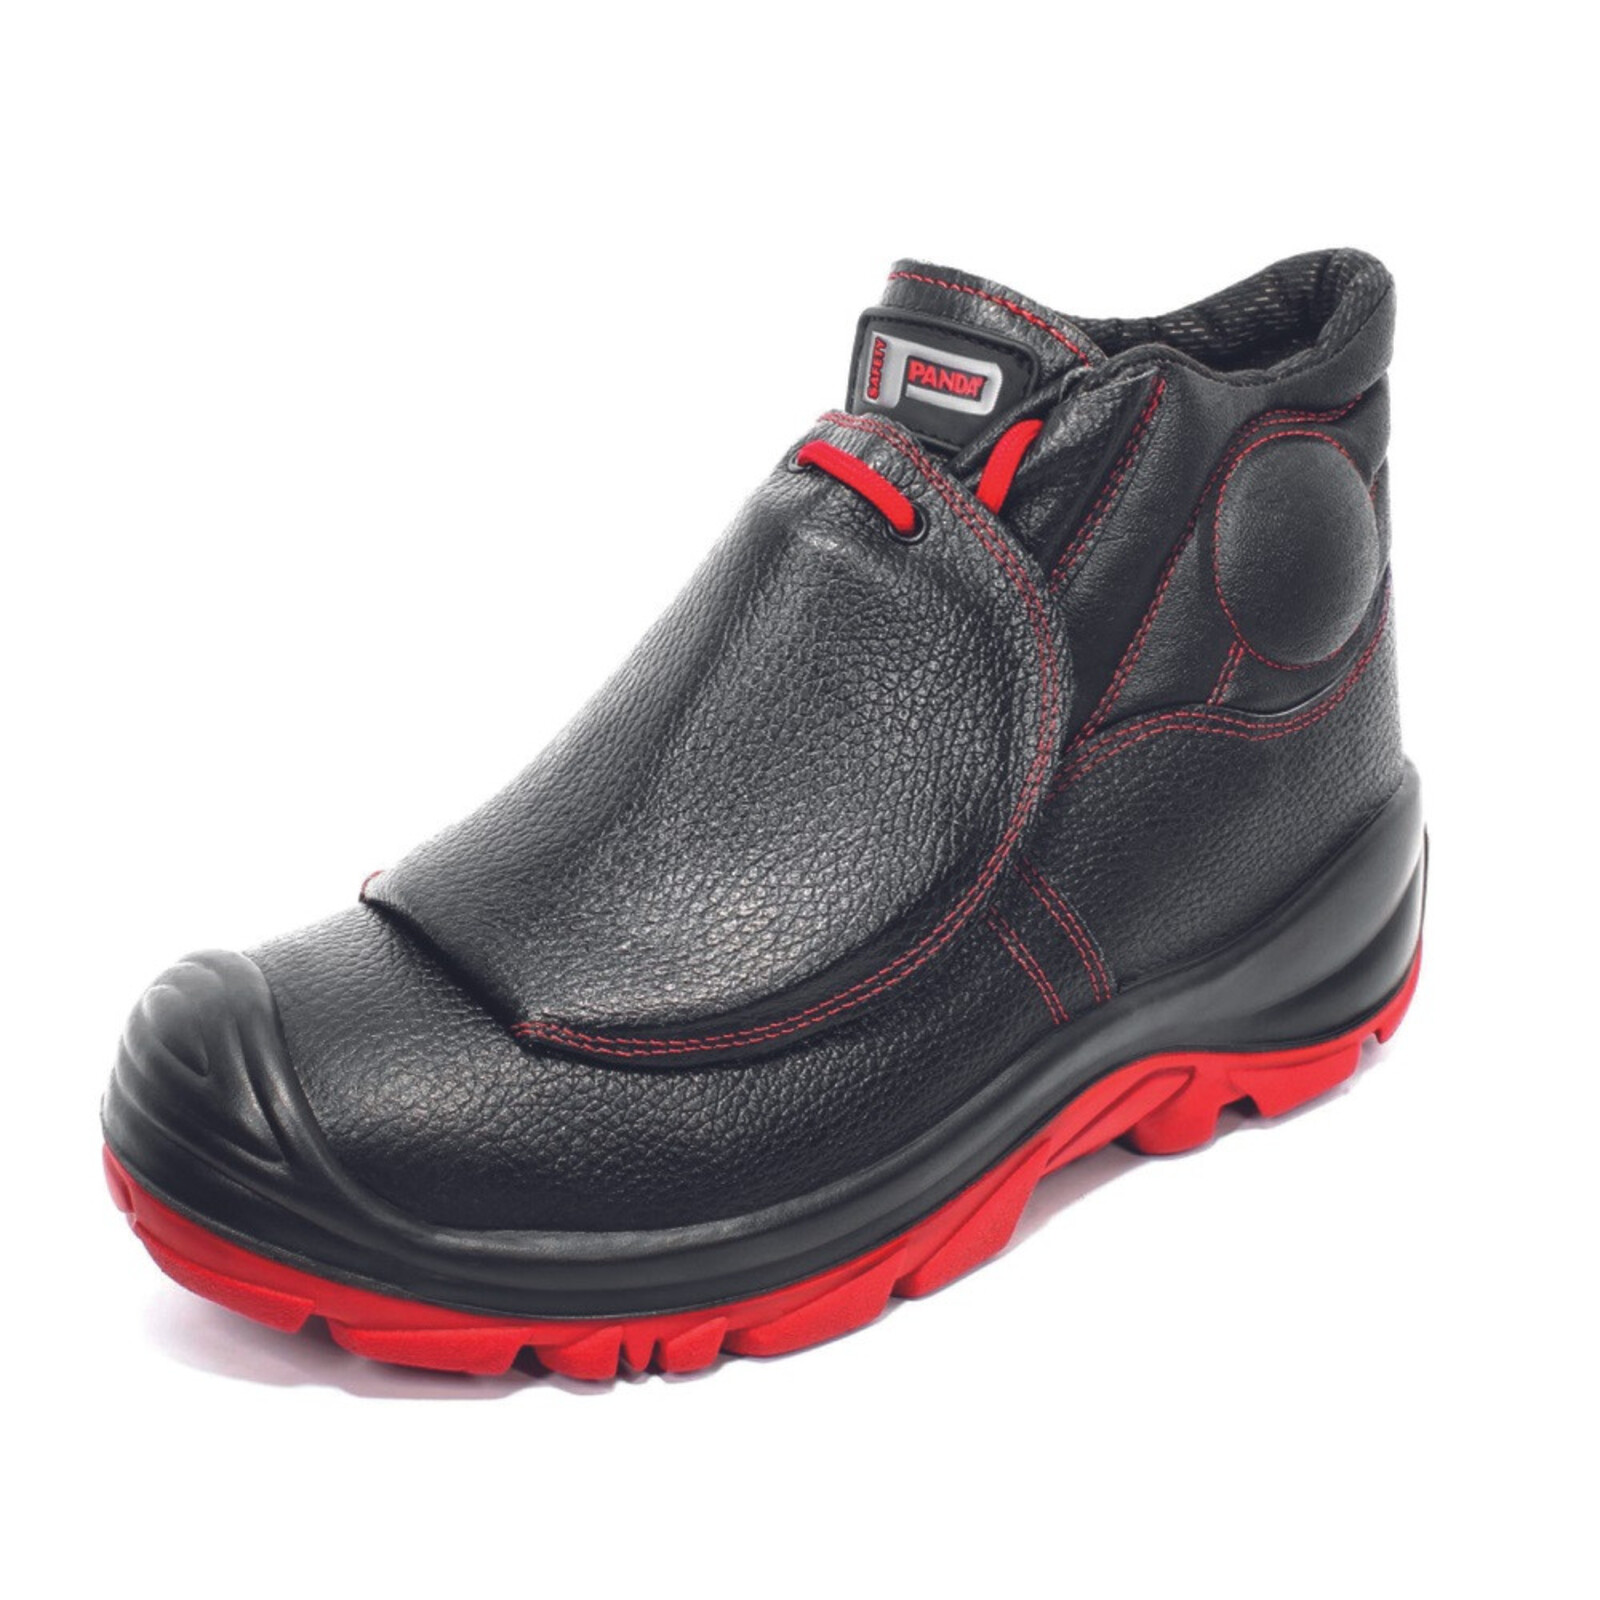 Bezpečnostná členková obuv Panda Ardita MF S3 HRO M SRC - veľkosť: 45, farba: čierna/červená